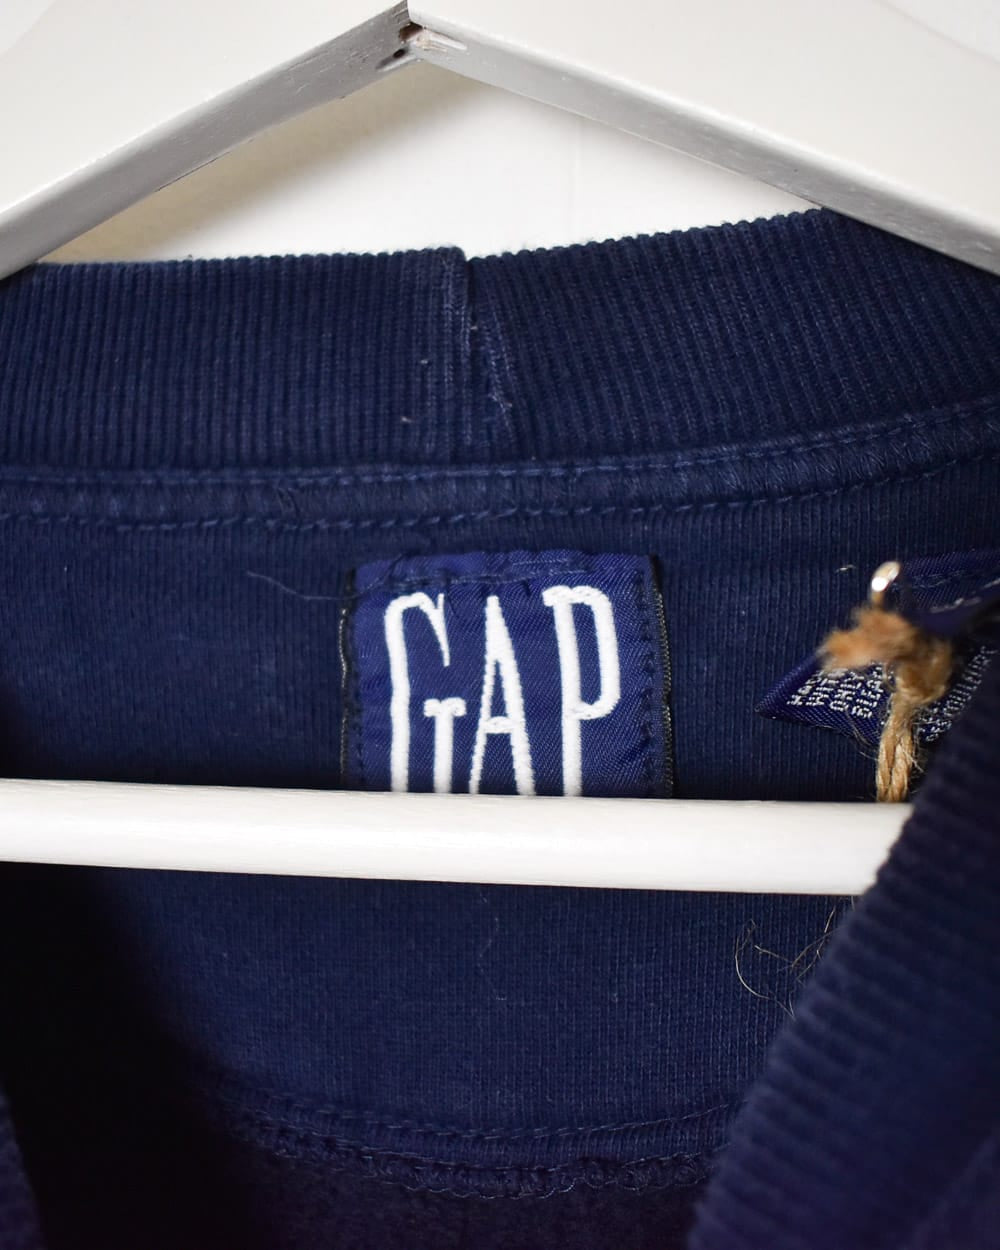 Navy Gap Sweatshirt - Large